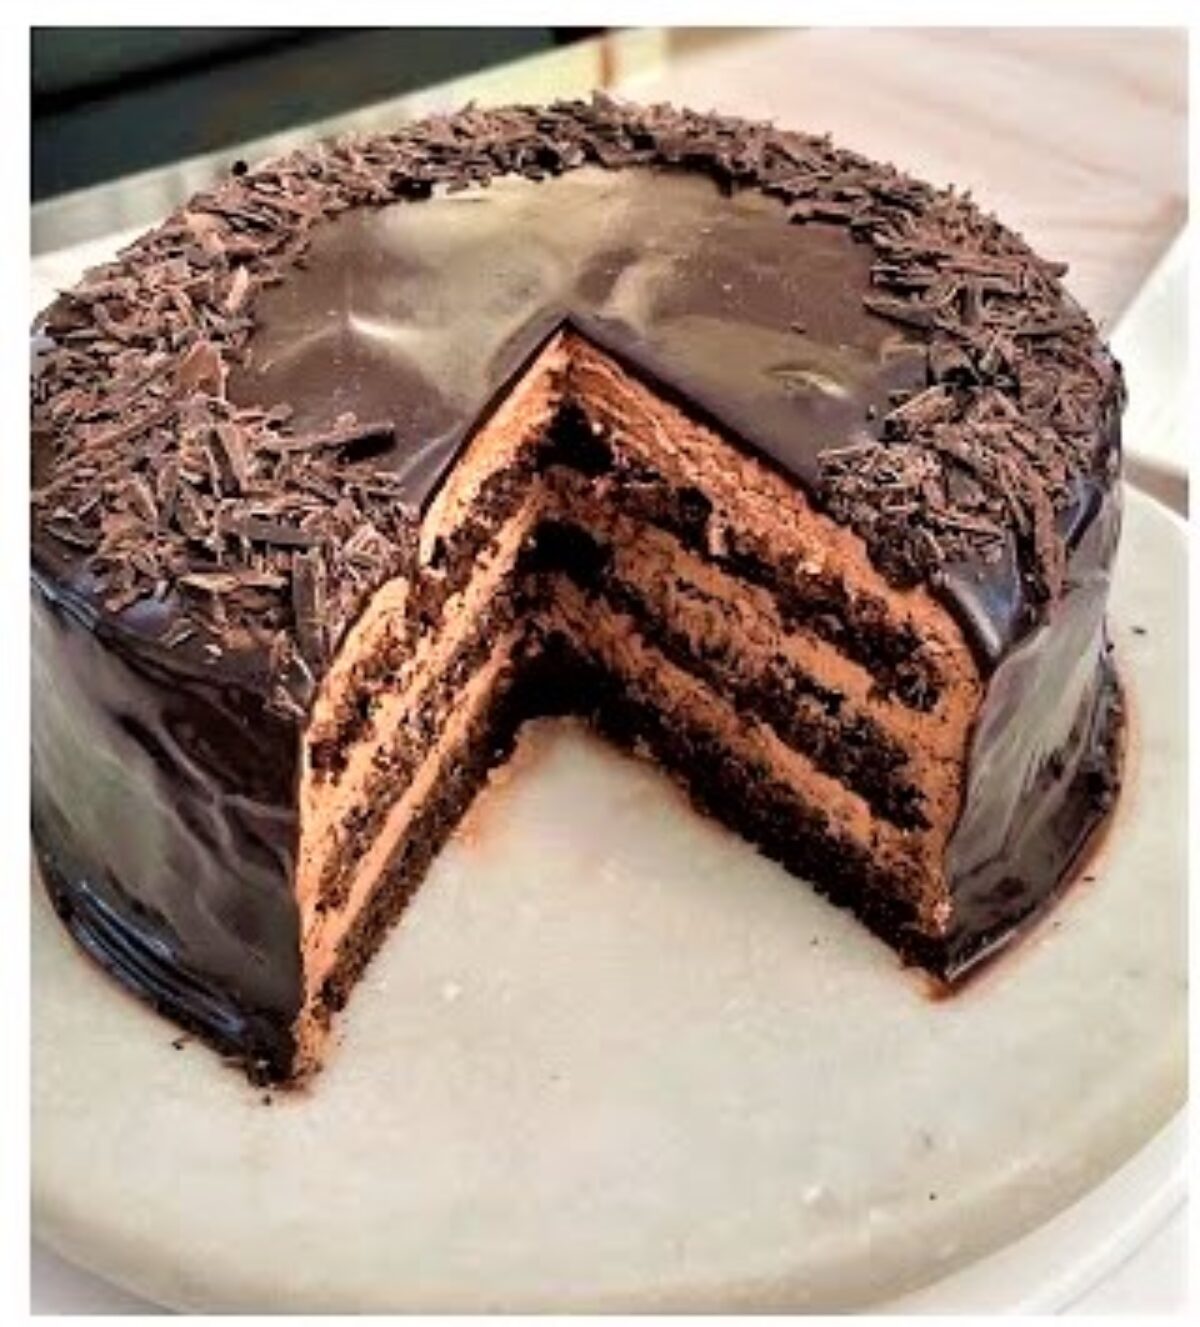 बर्थडे केक (Birthday Cake recipe in hindi) रेसिपी बनाने की विधि in Hindi by  Richa prajapati - Cookpad